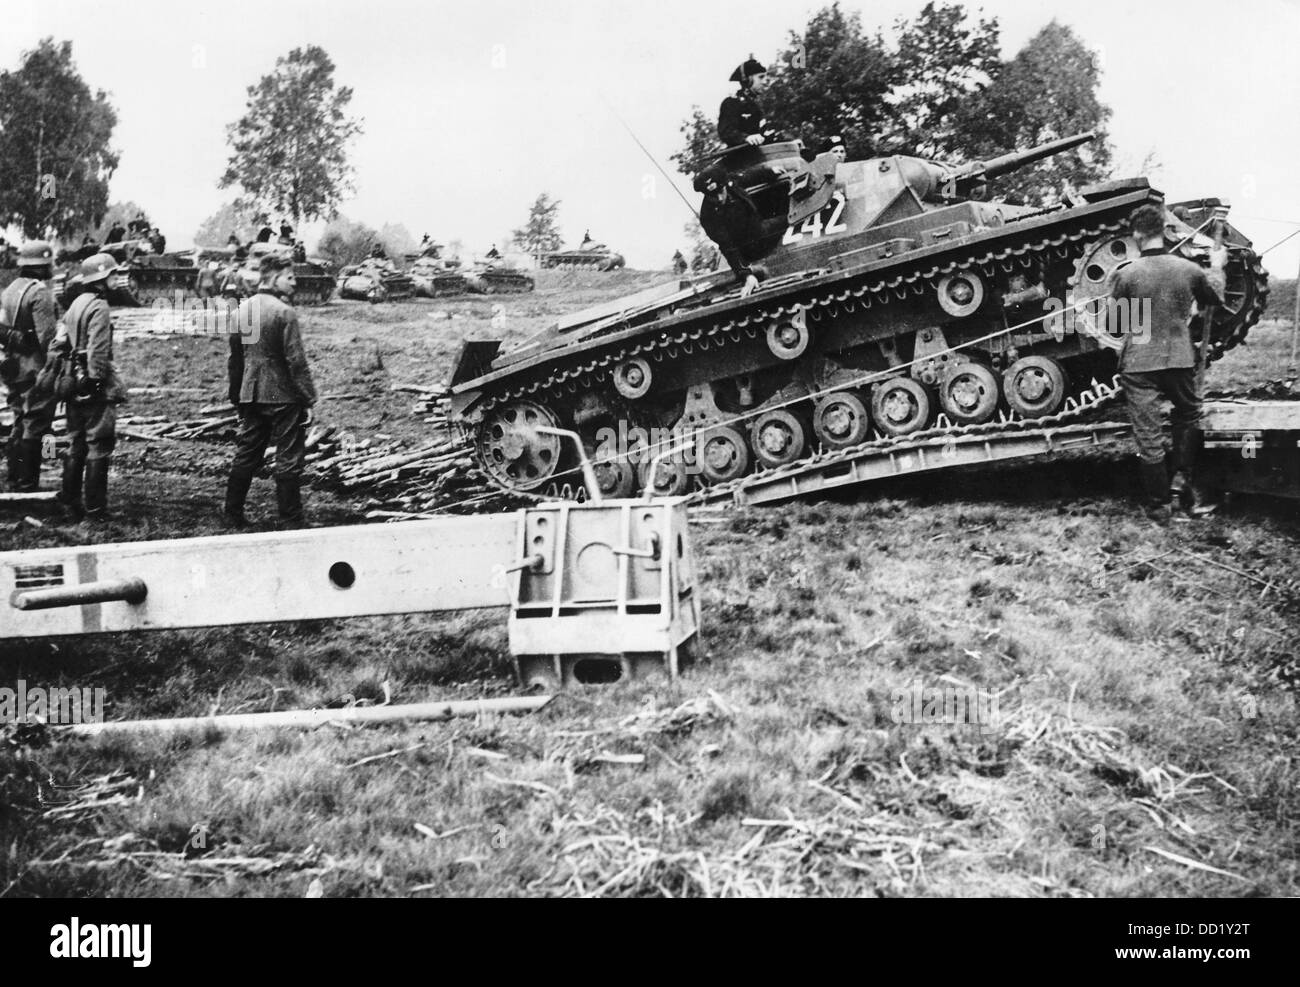 L'immagine della Propaganda nazista! Mostra un carro armato della Wehrmacht tedesca nel contesto della loro invasione della Polonia il 1 settembre 1939, con la quale iniziarono la seconda guerra mondiale. Fotoarchiv für Zeitgeschichte Foto Stock